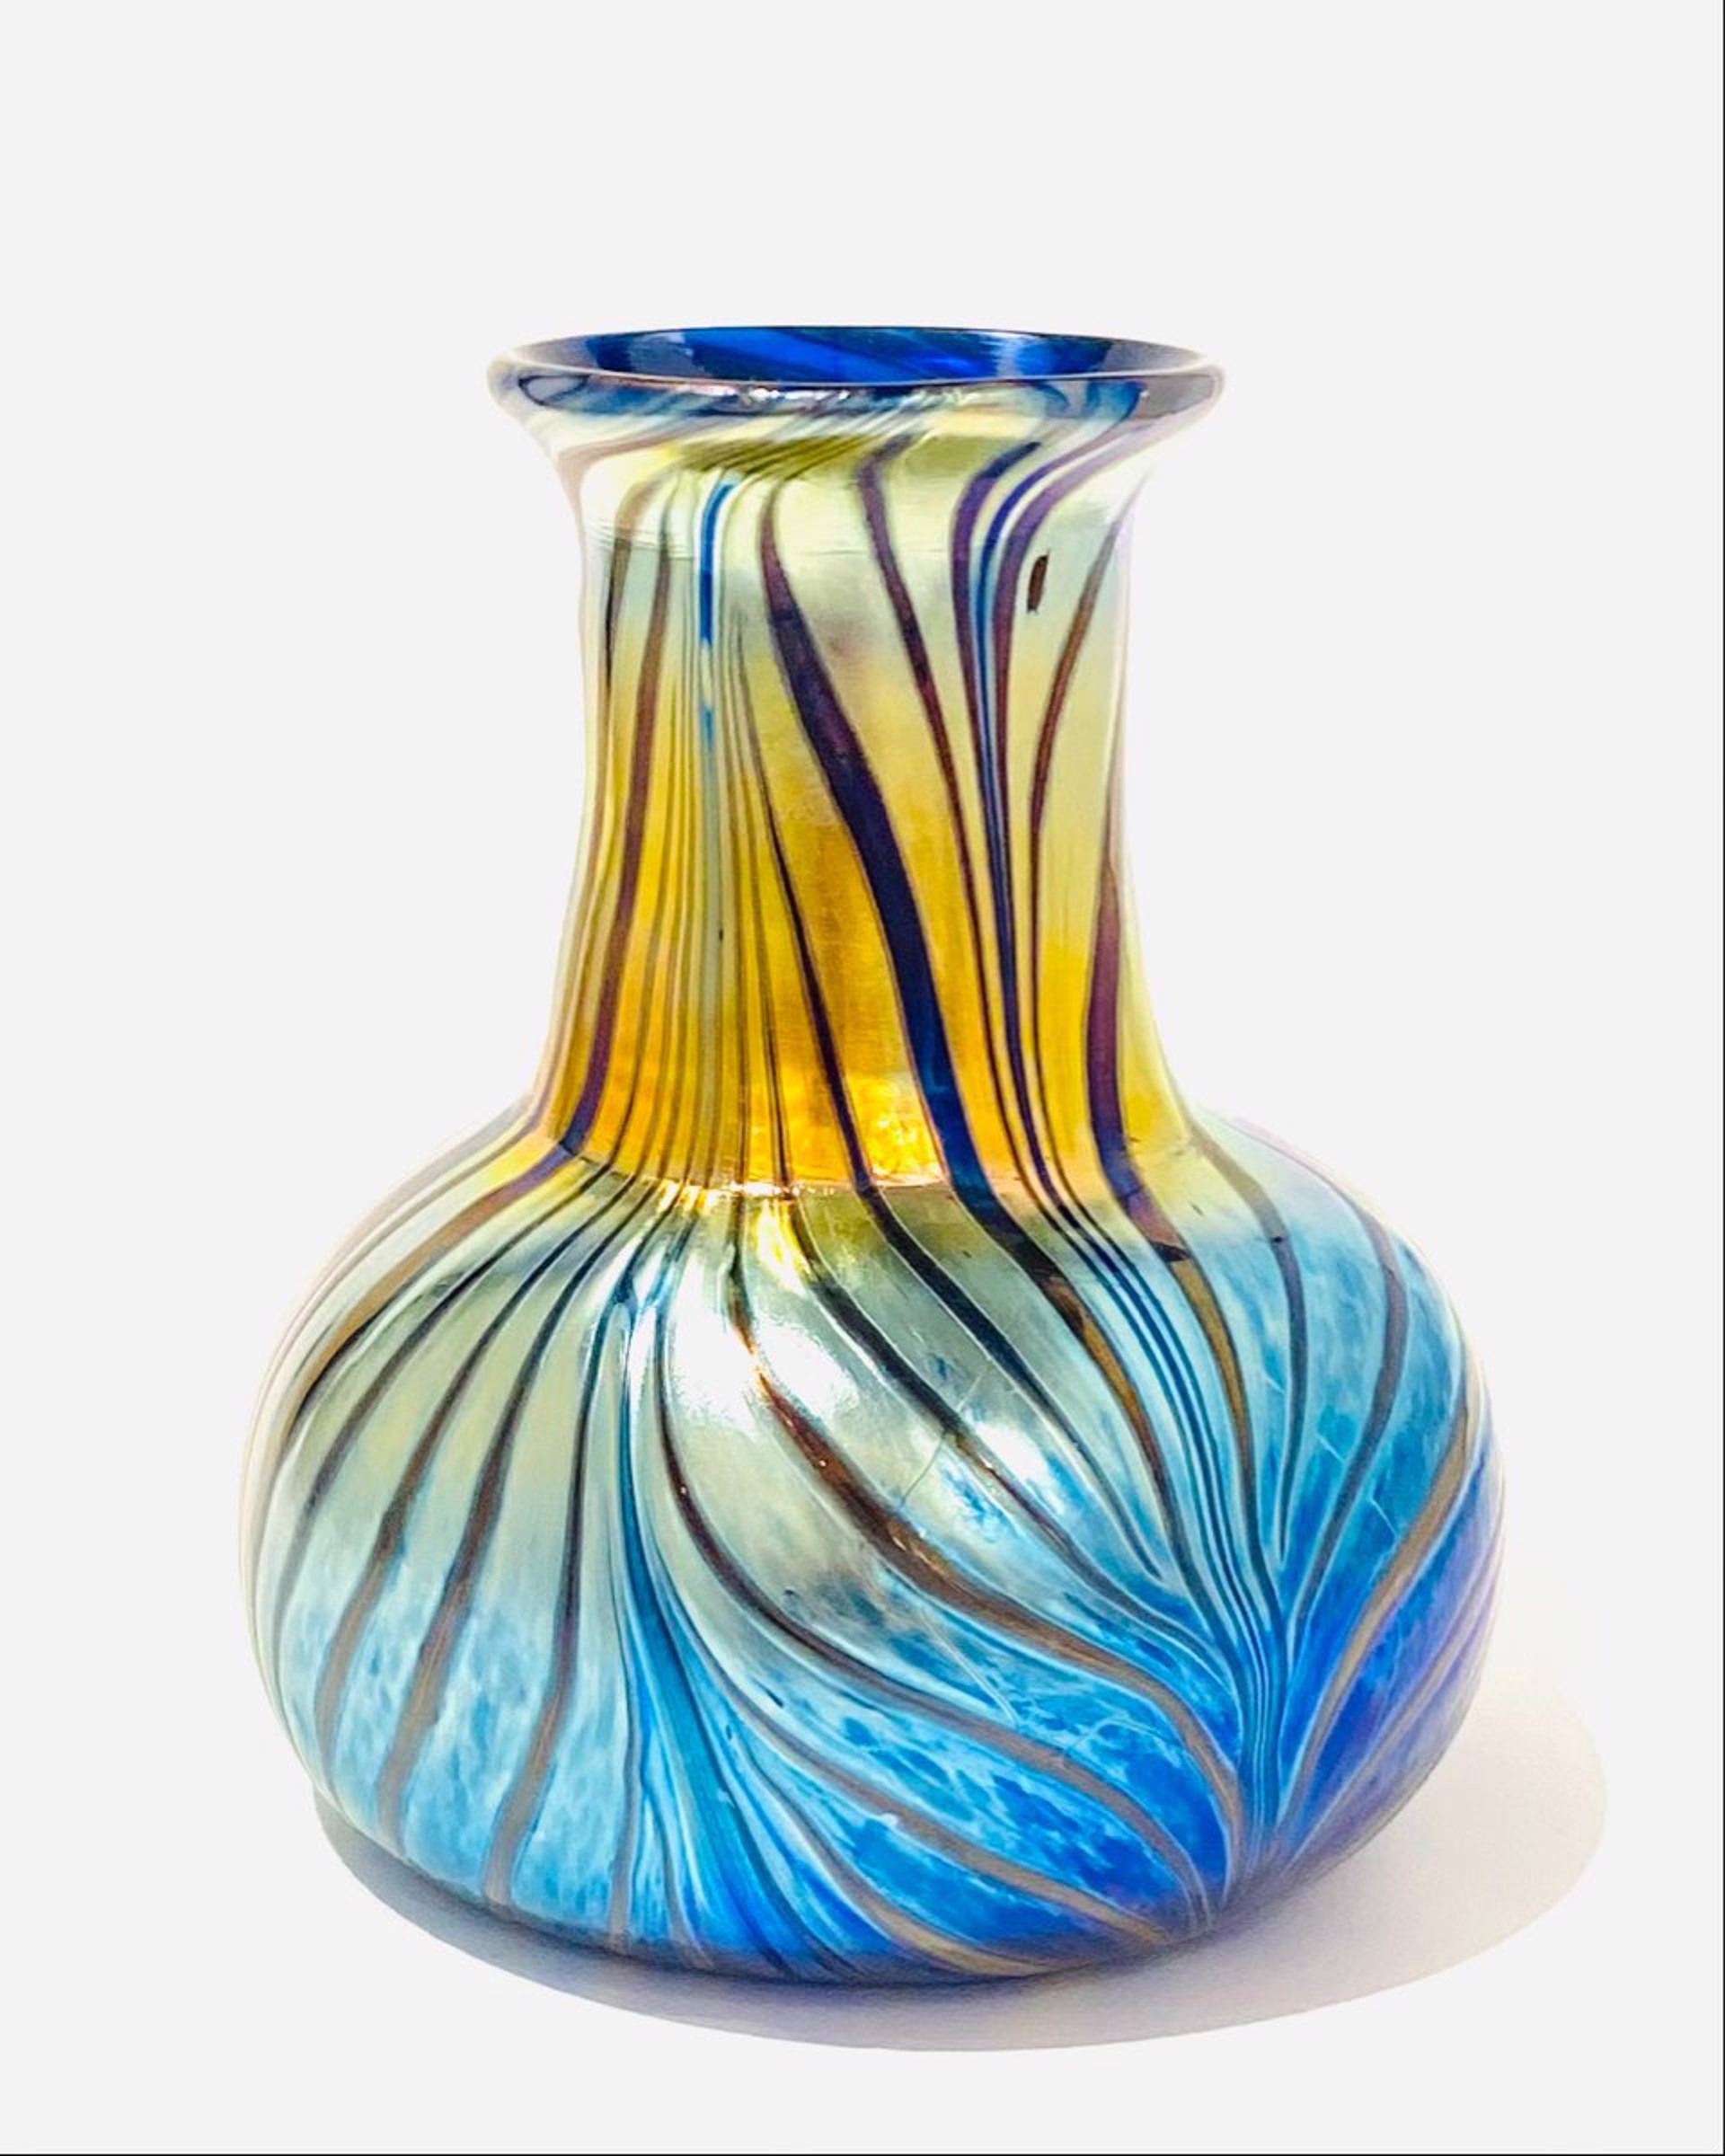 Fumed Glass Vase JG22-18 by John Glass